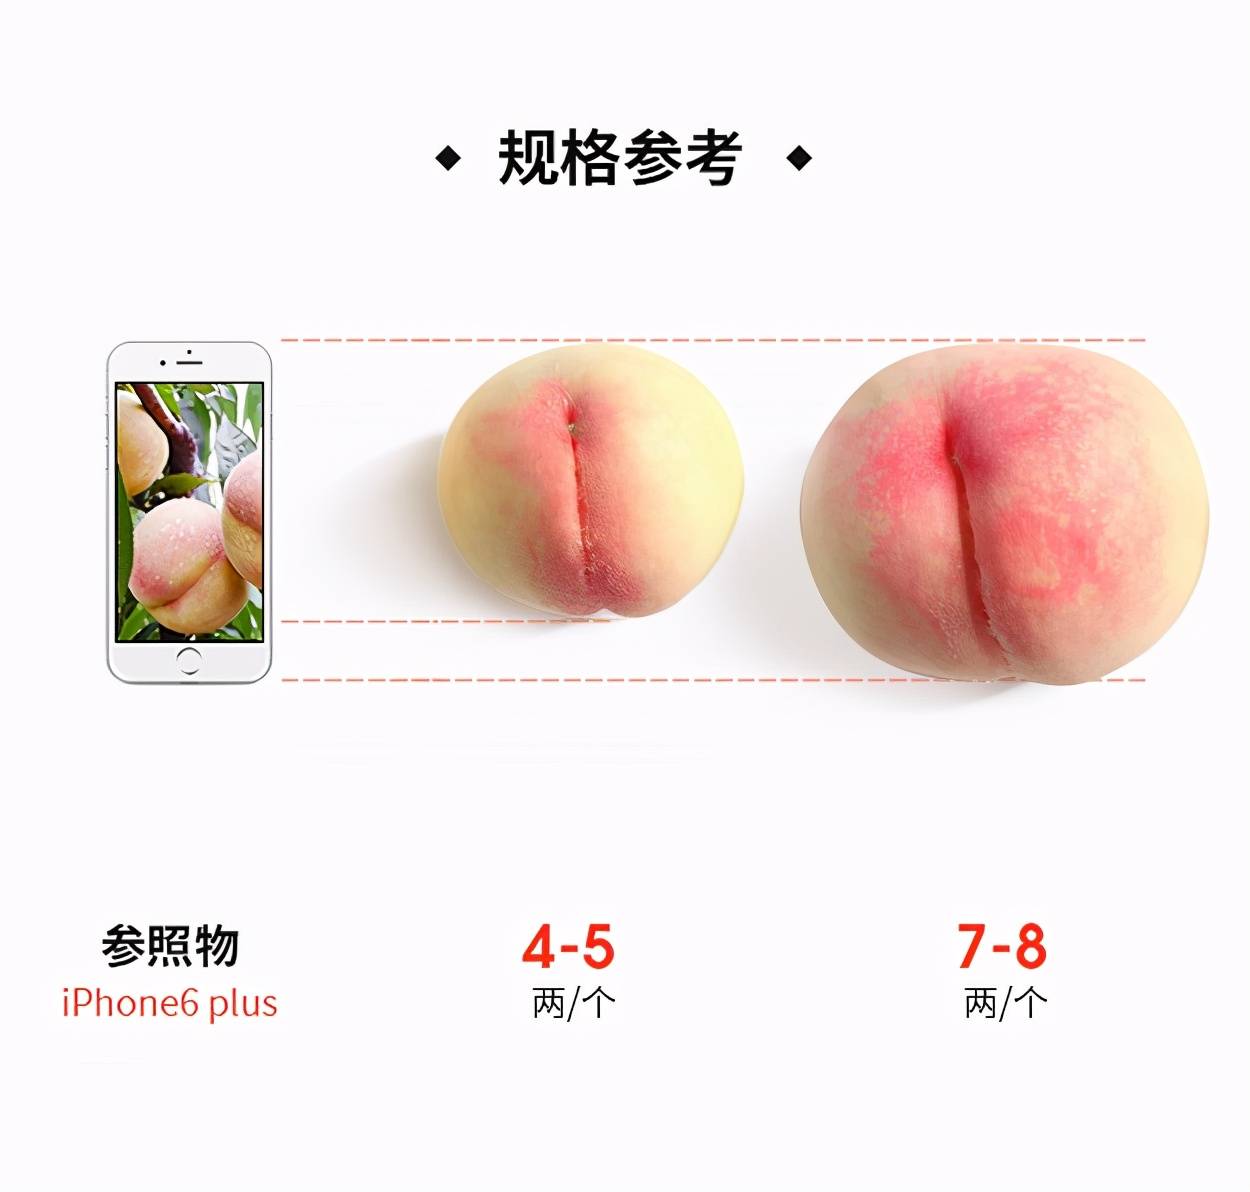 水蜜桃实验研究试看 小辣椒i3樱桃5g入口